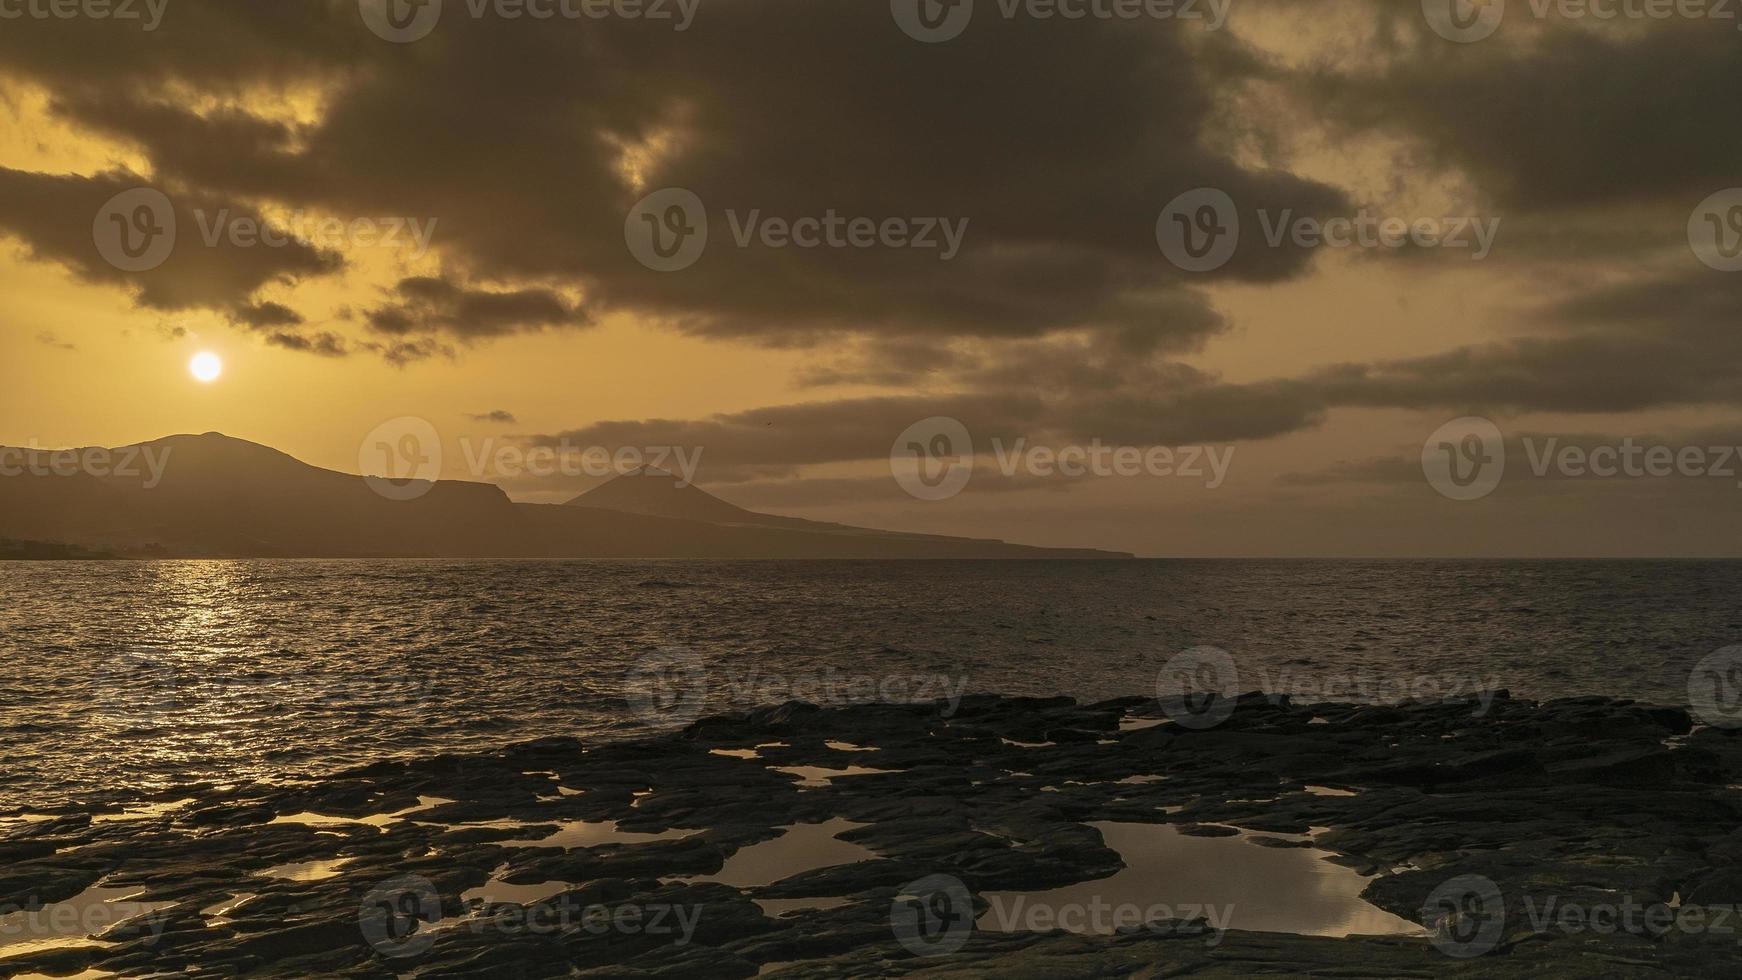 solnedgång på ön Gran Canaria foto